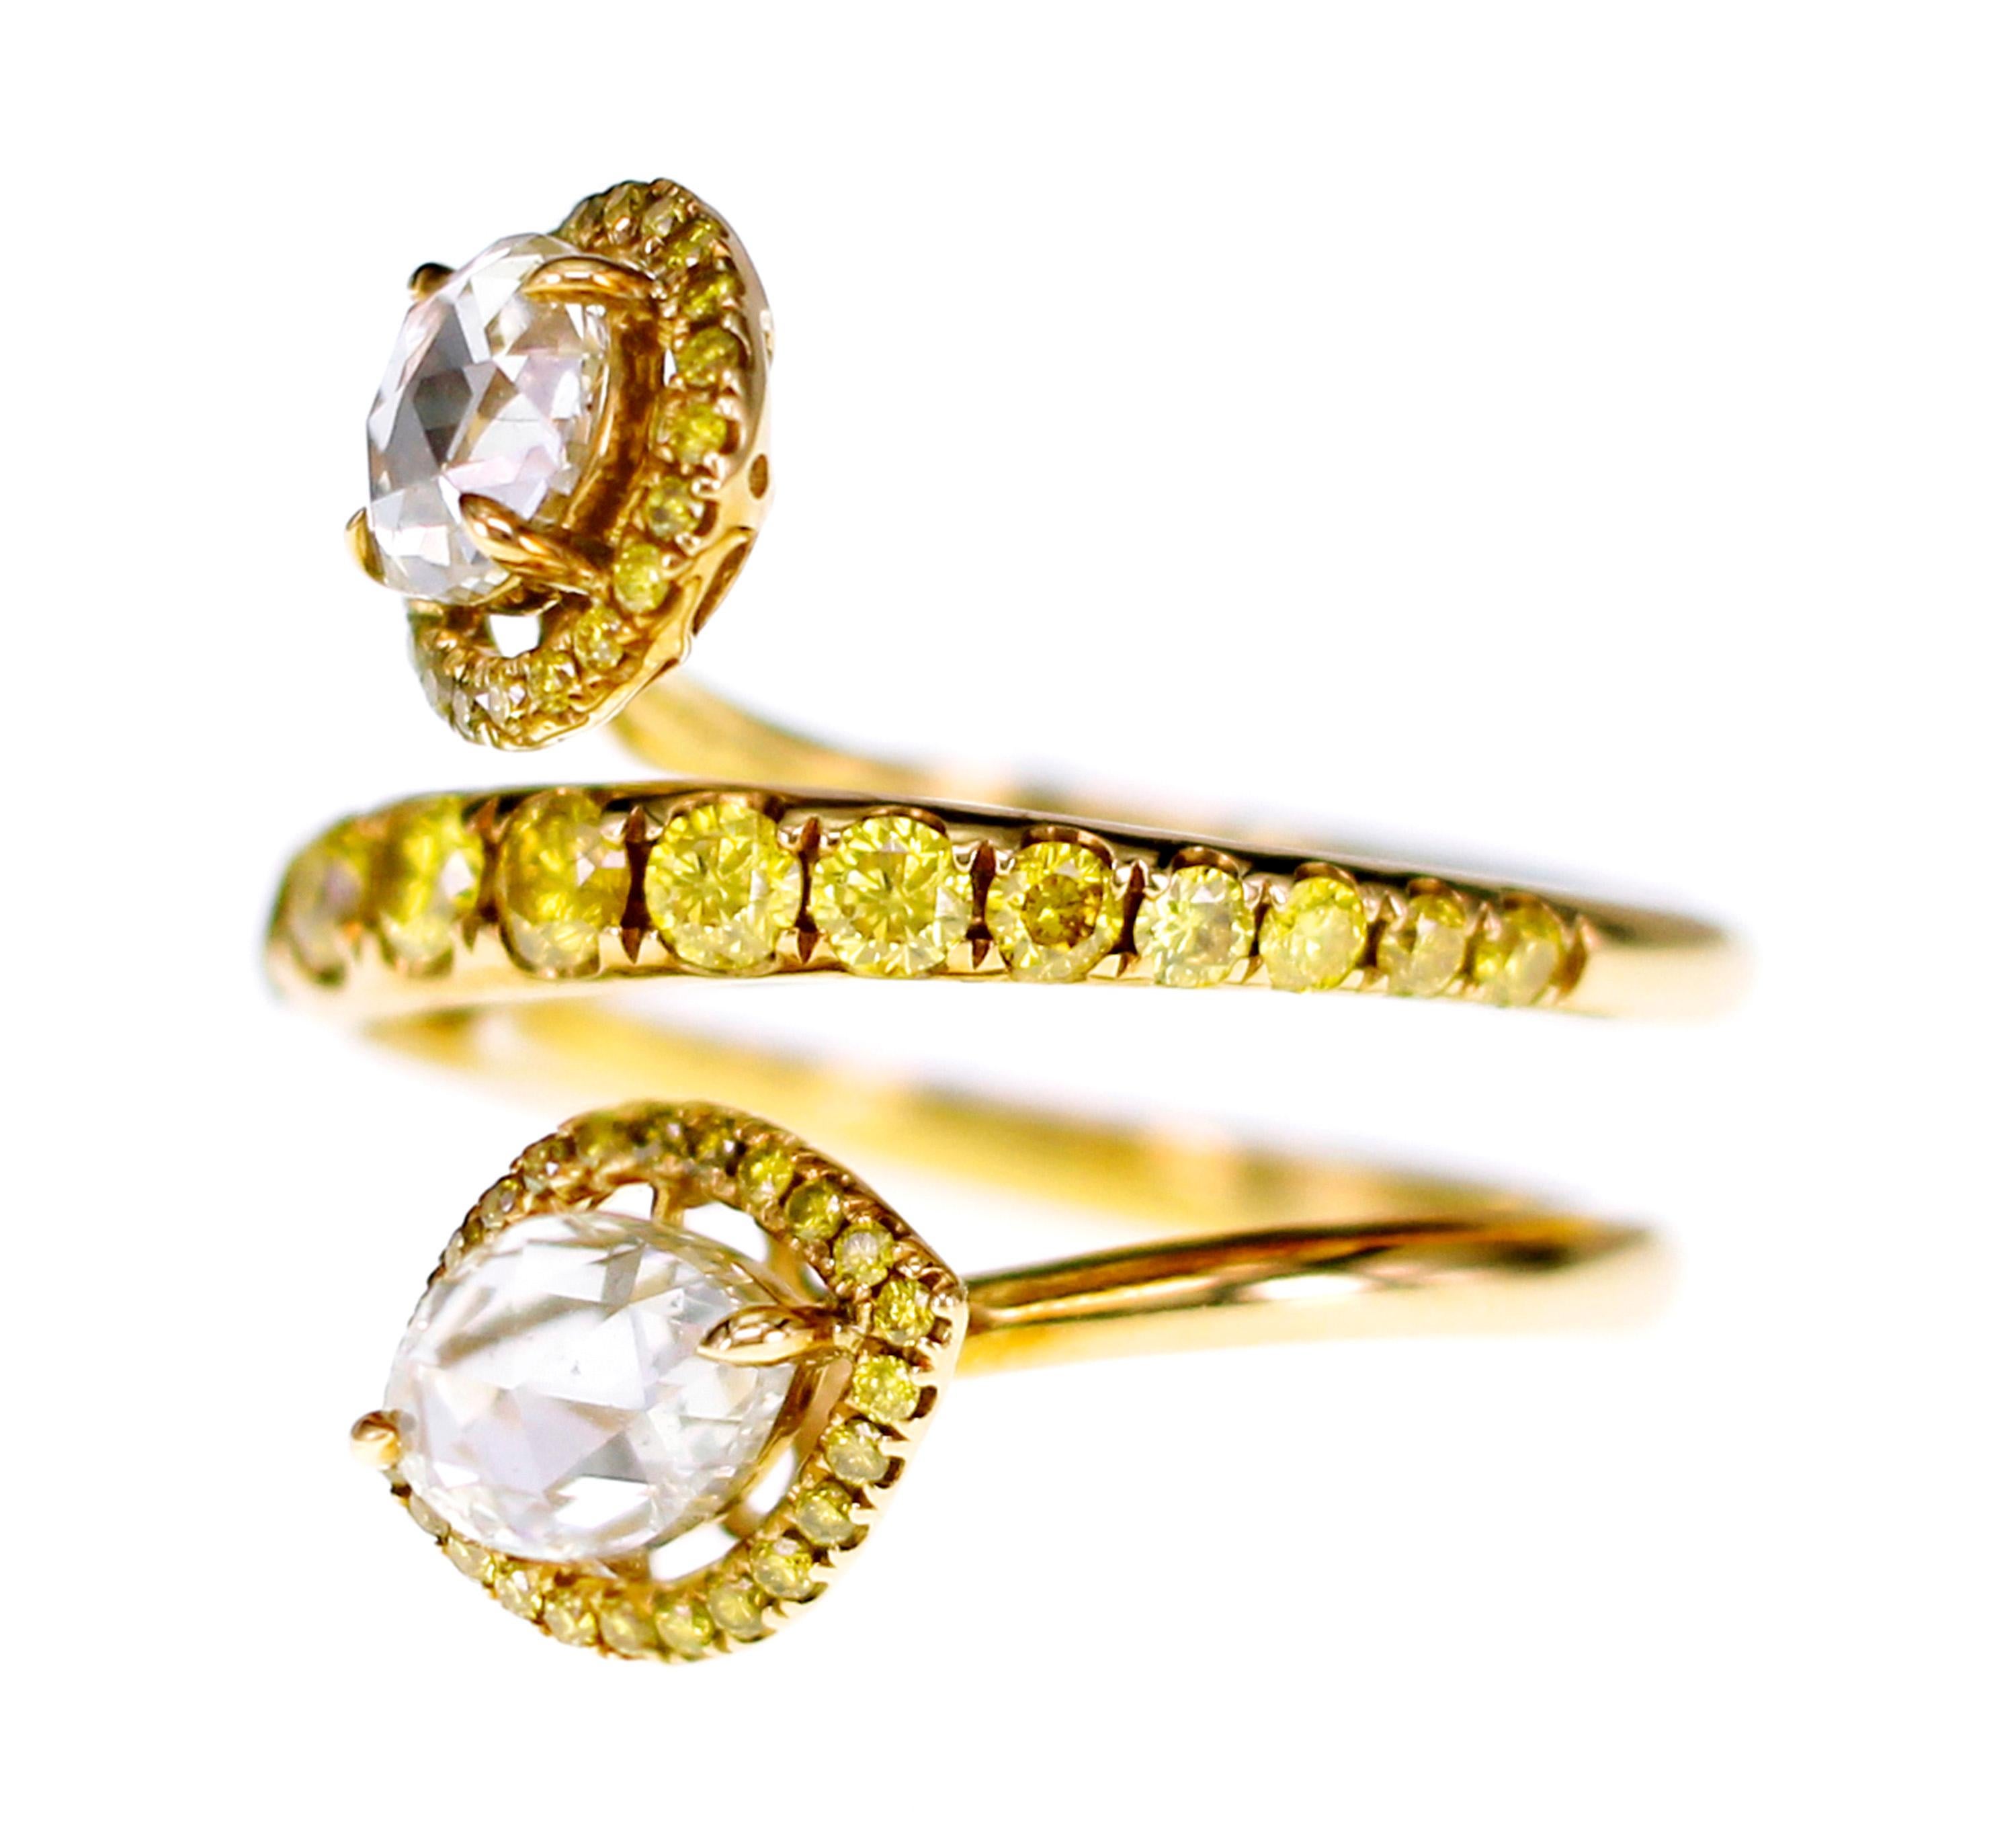 Inspiriert von einer Schlange, werden 2 Stück Natural fancy yellow diamond rose cut von einem Karat lebhaft gelben runden Diamanten in Nahkampfgröße begleitet.
Eines unserer meistverkauften Designs